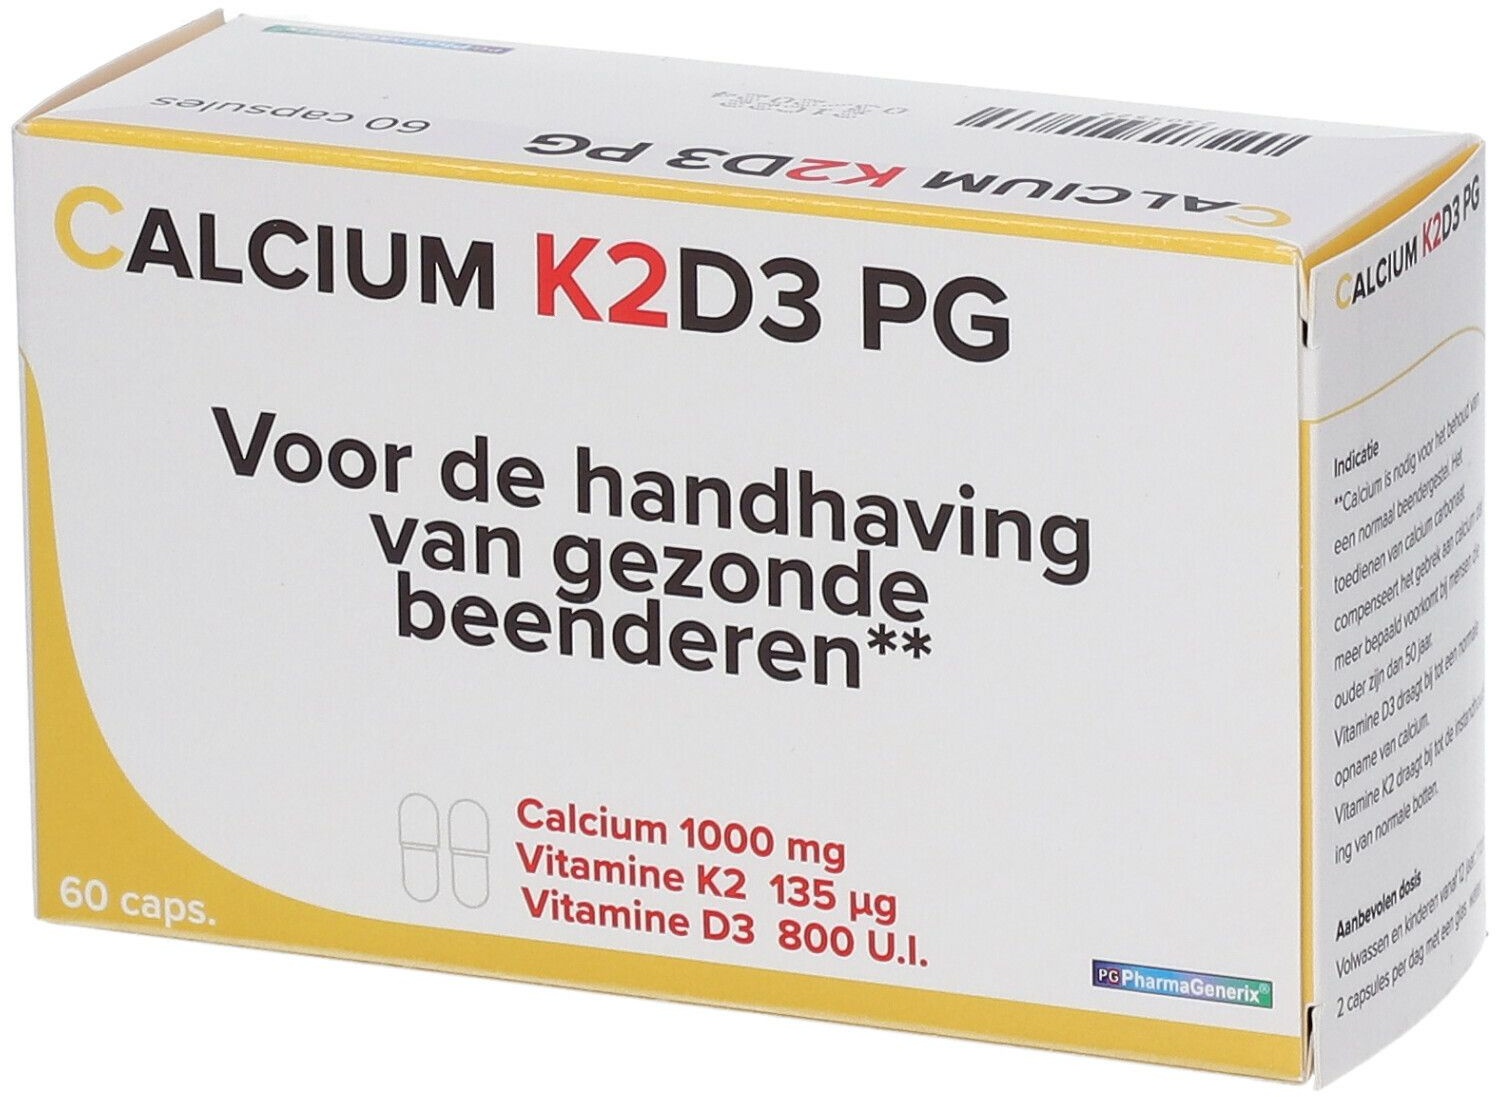 Calcium K2D3 PG 60 pc(s) capsule(s)